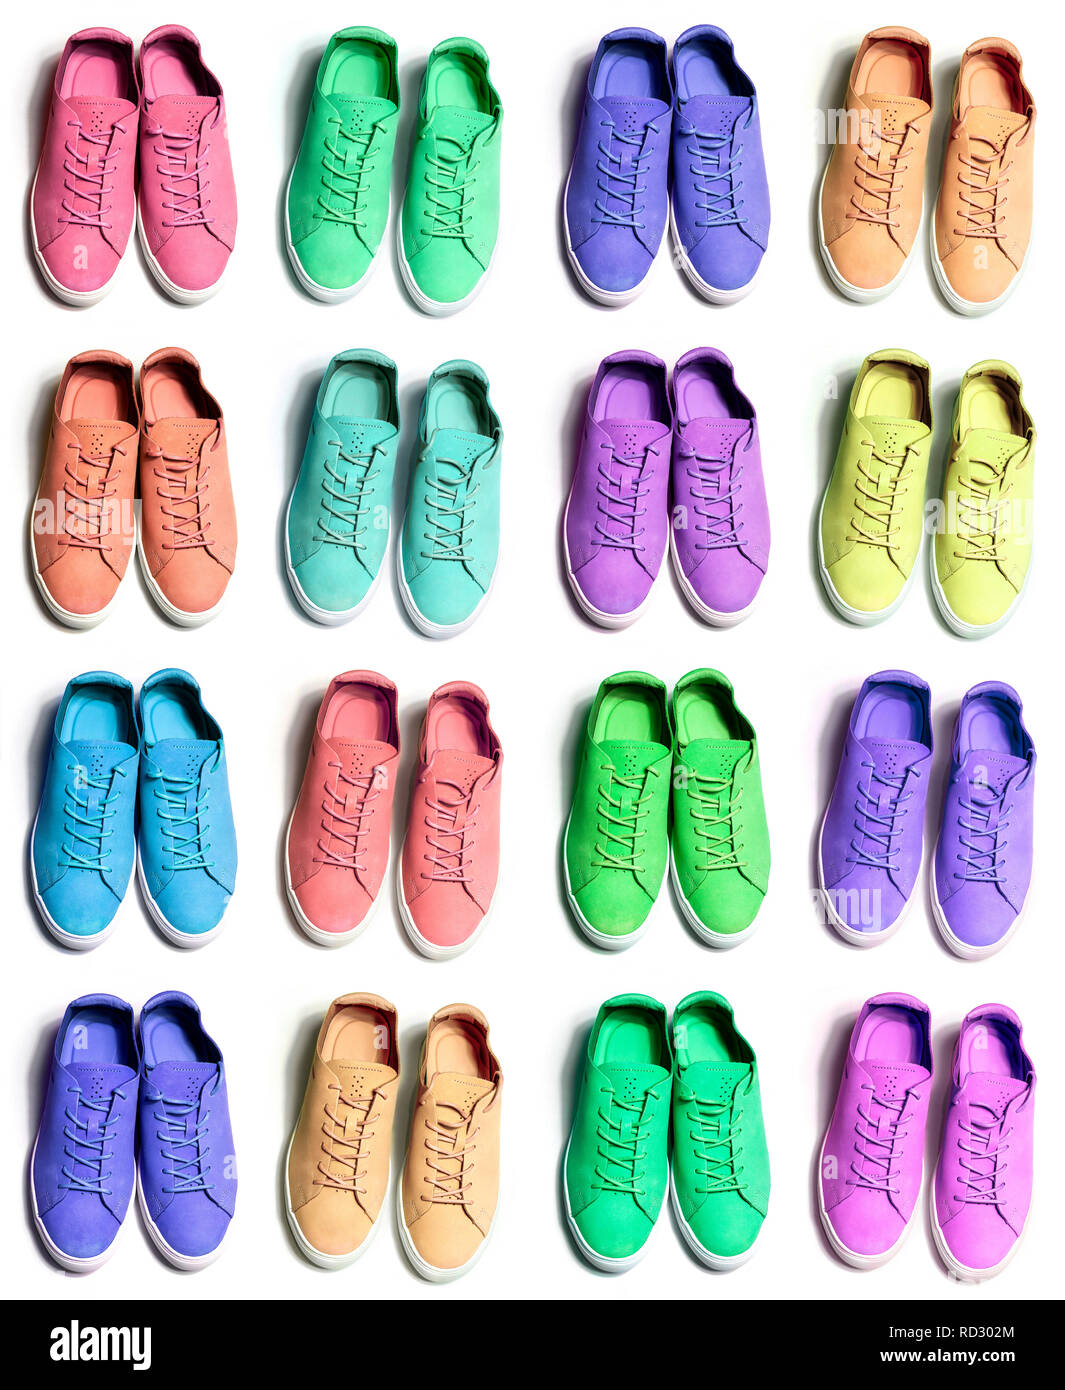 De nombreuses chaussures sneaker sportive colorés sur fond blanc Banque D'Images